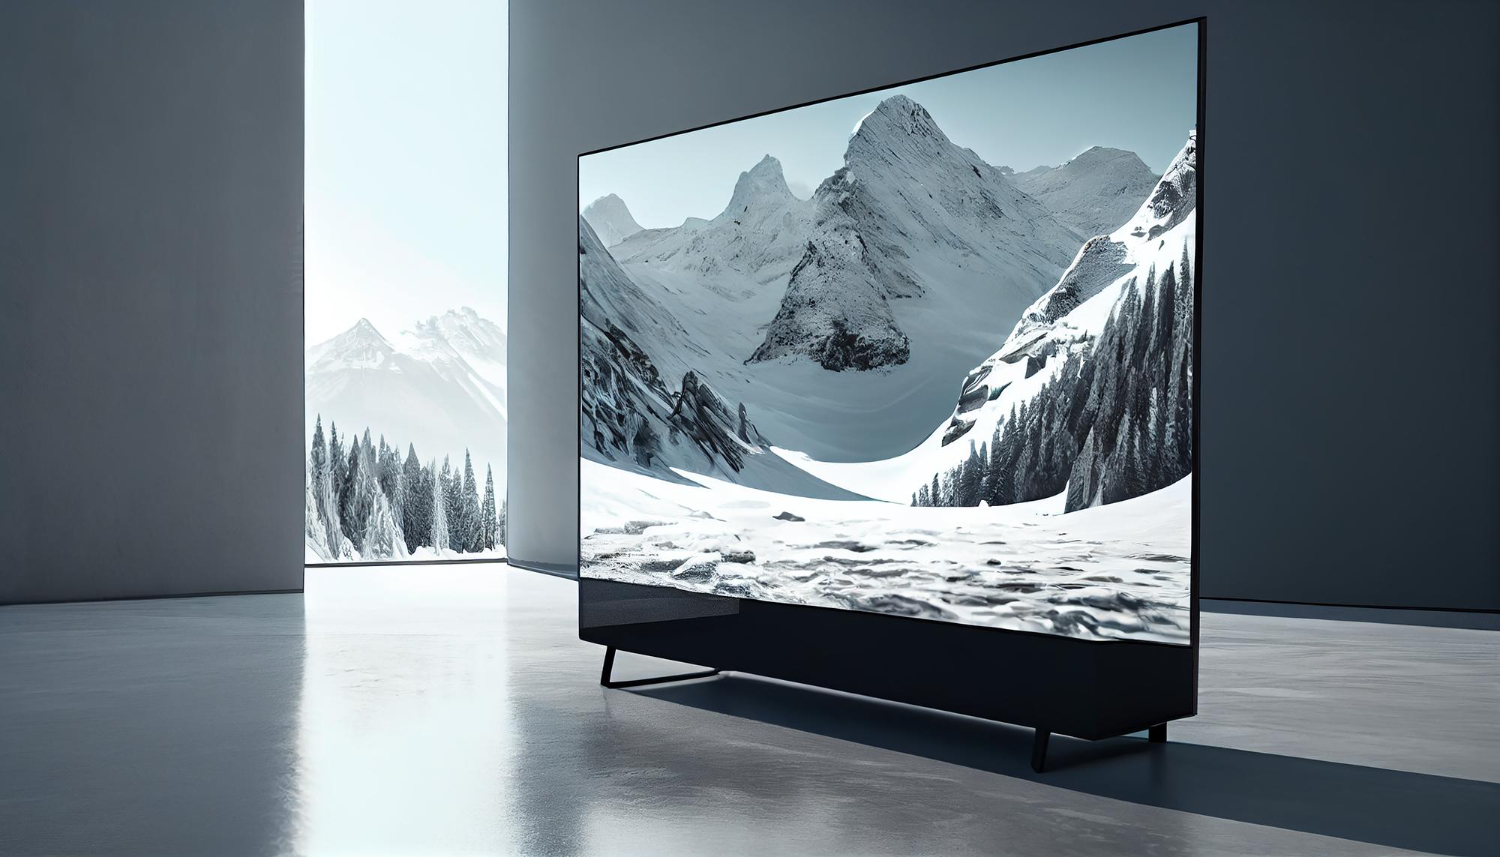 W Europie zapotrzebowanie na duże telewizory wciąż mniejsze niż w USA i Chinach. Polacy przy wyborze kierują się przede wszystkim ceną